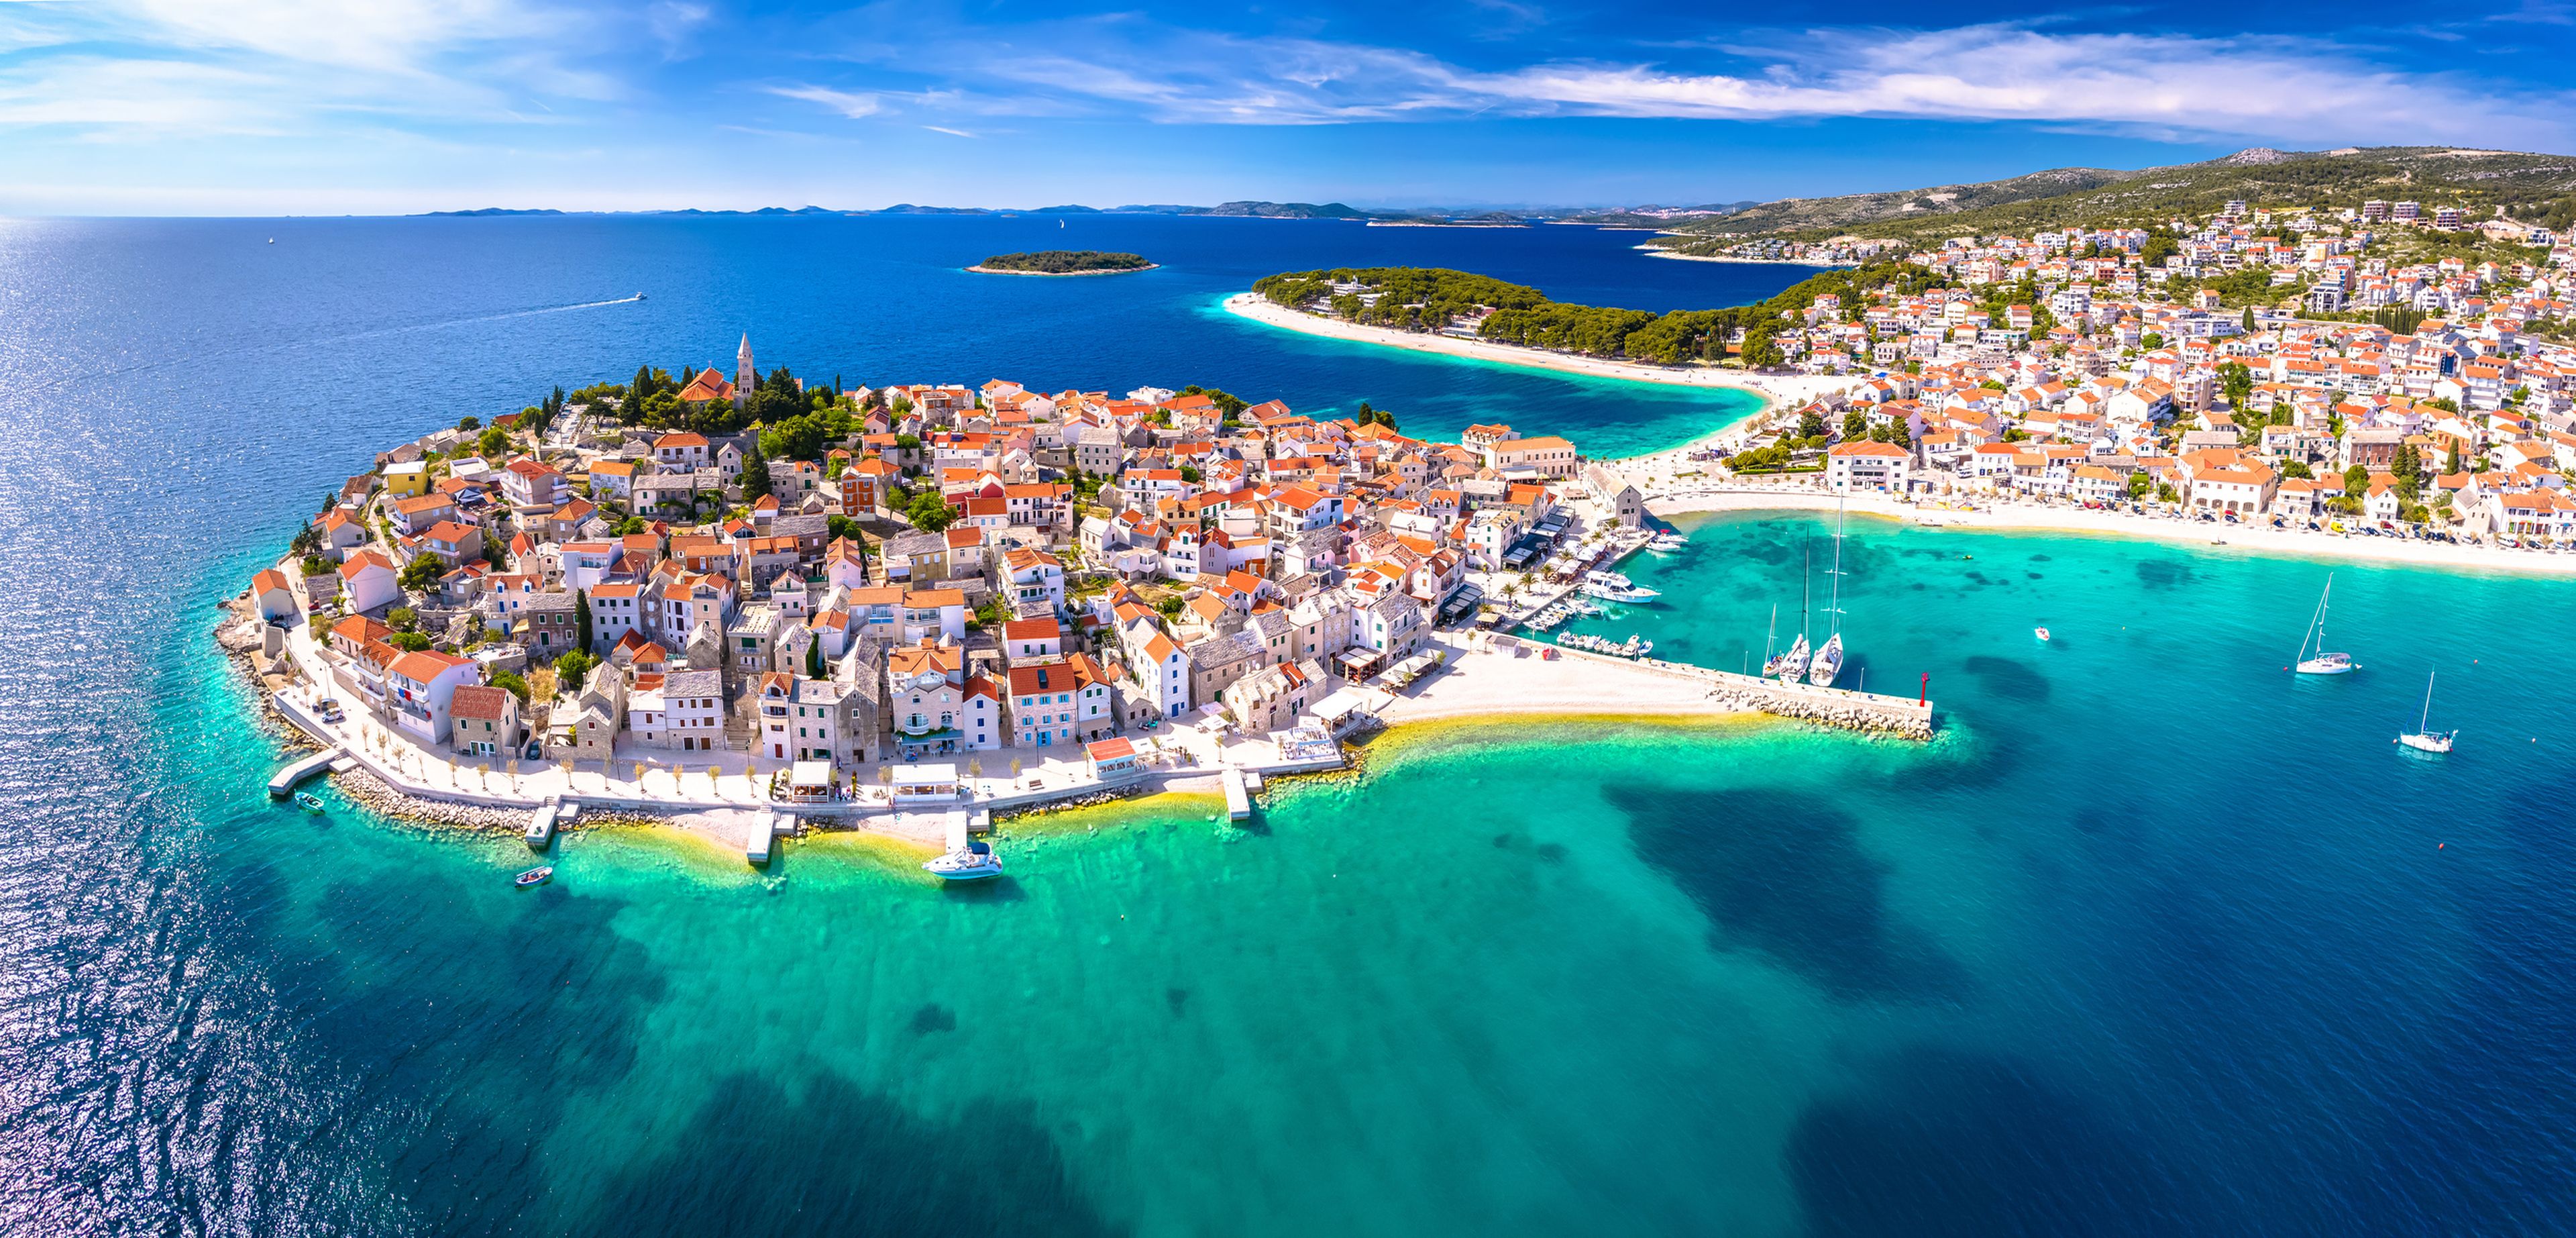 Croacia pone a la venta viviendas a 13 céntimos